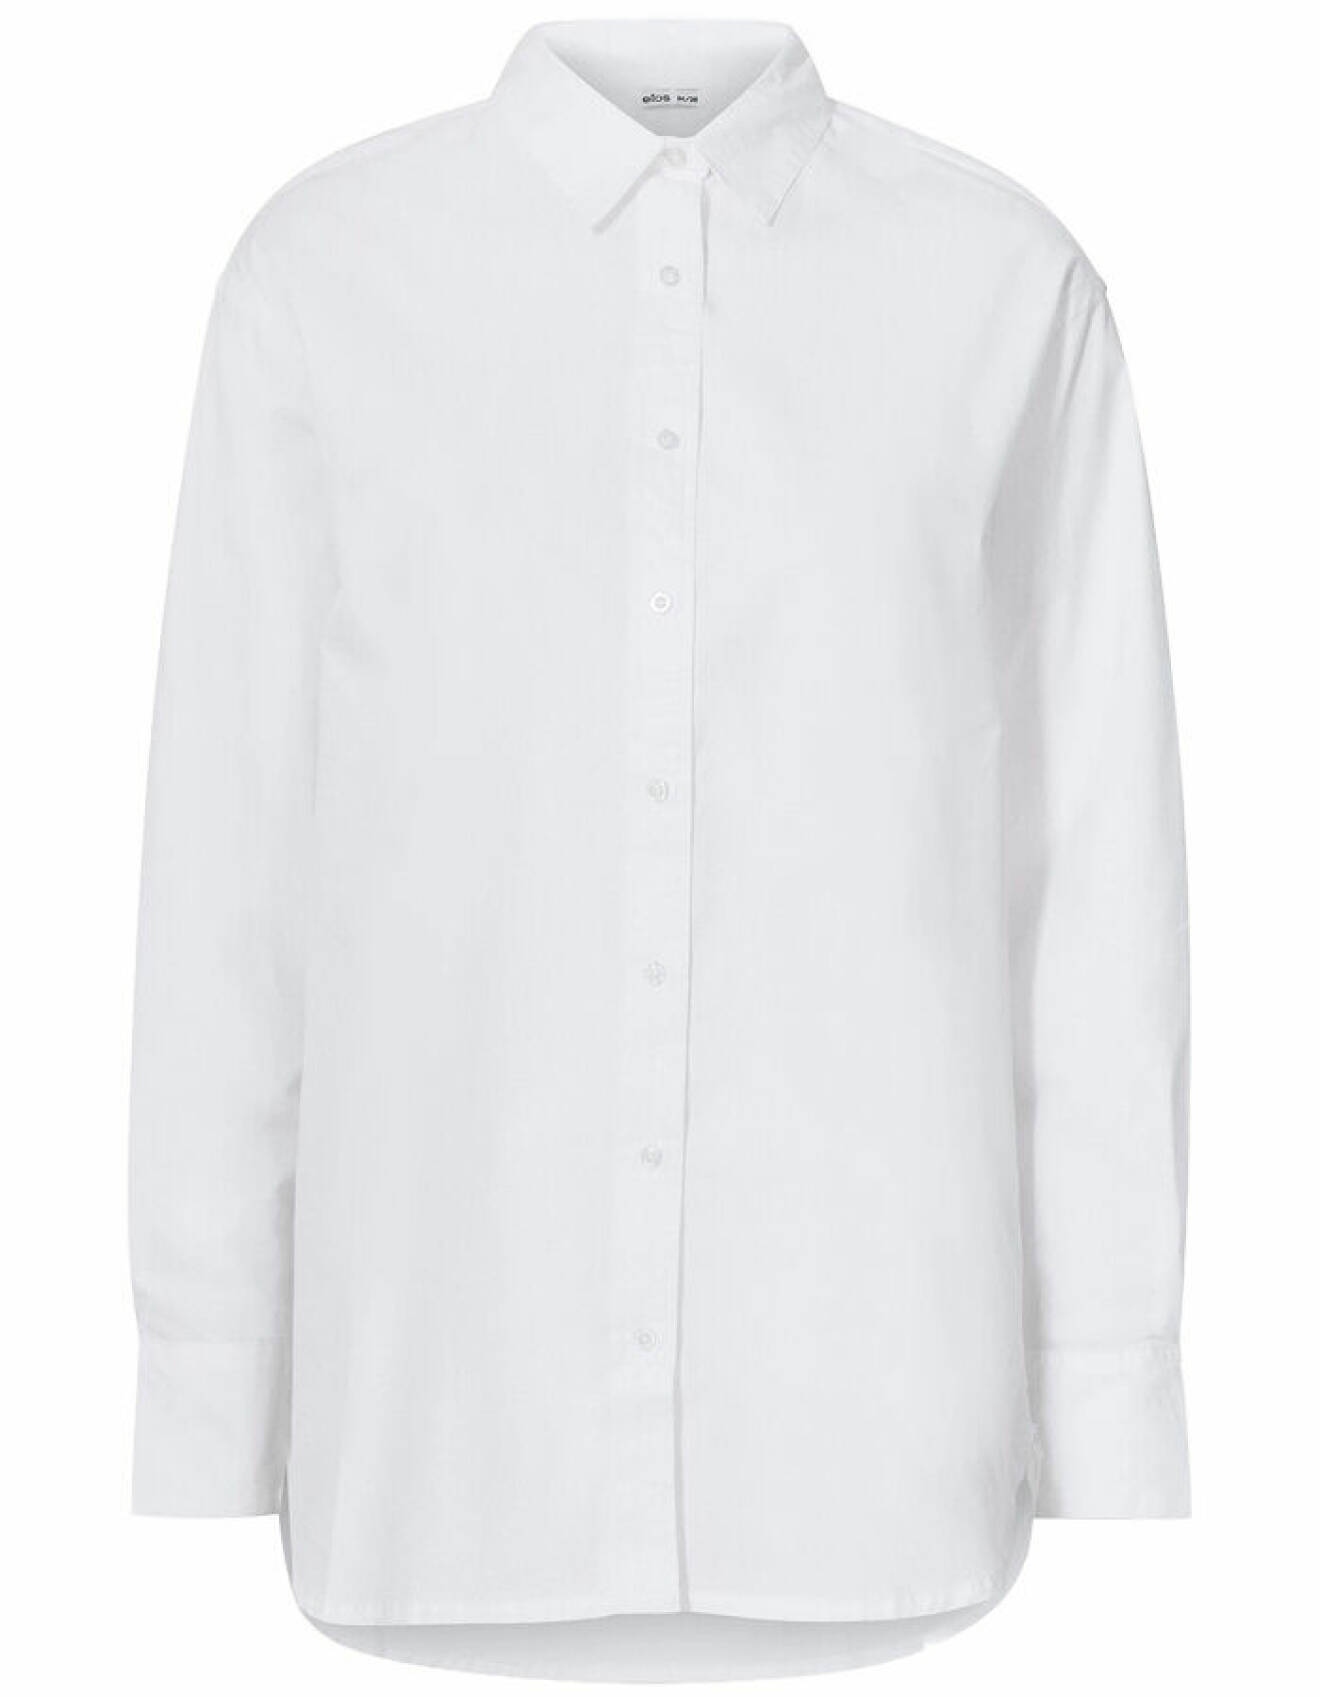 vit lång skjorta för dam från ellos